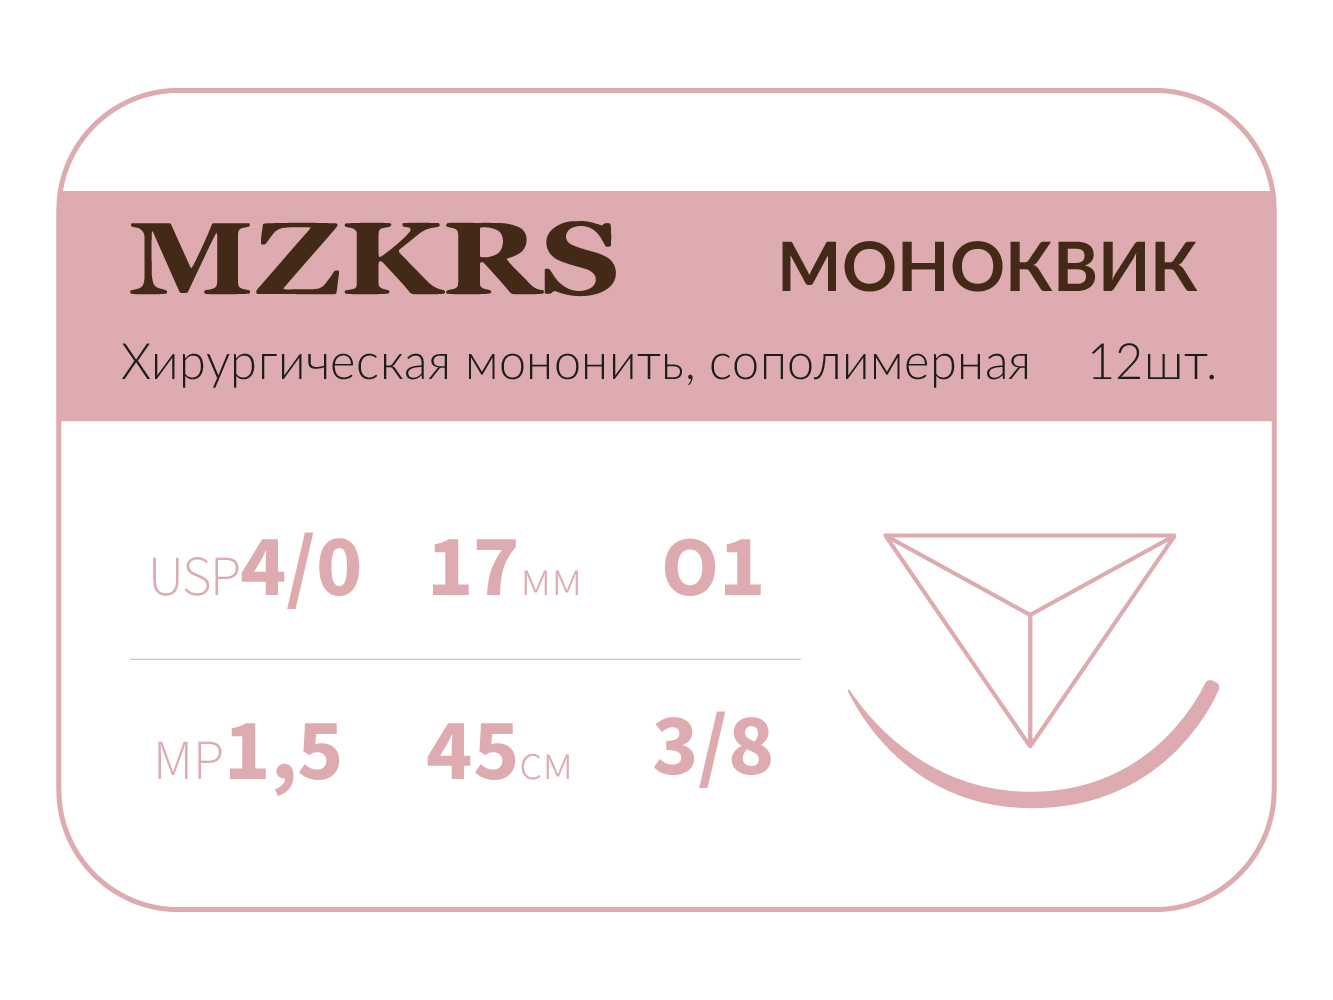 1738О1 Premium-4/0 (1,5)45 МОНК МОНОКВИК хирургическая мононить, сополимерная, MZKRS (Россия)